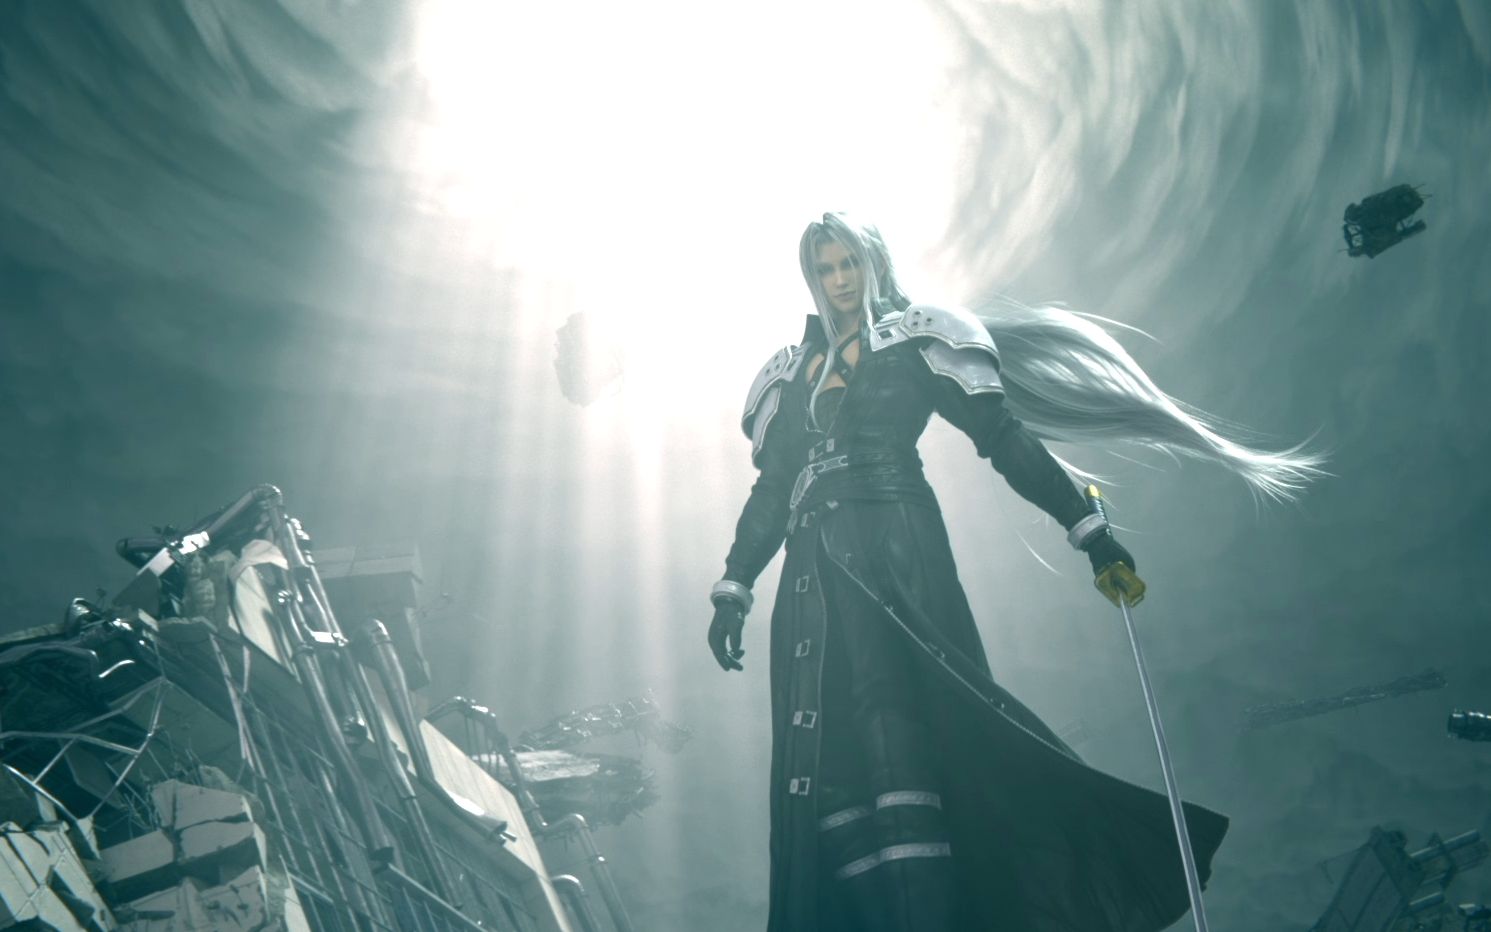 《最终幻想vii》中的神秘boss:解析萨菲罗斯的高人气魅力